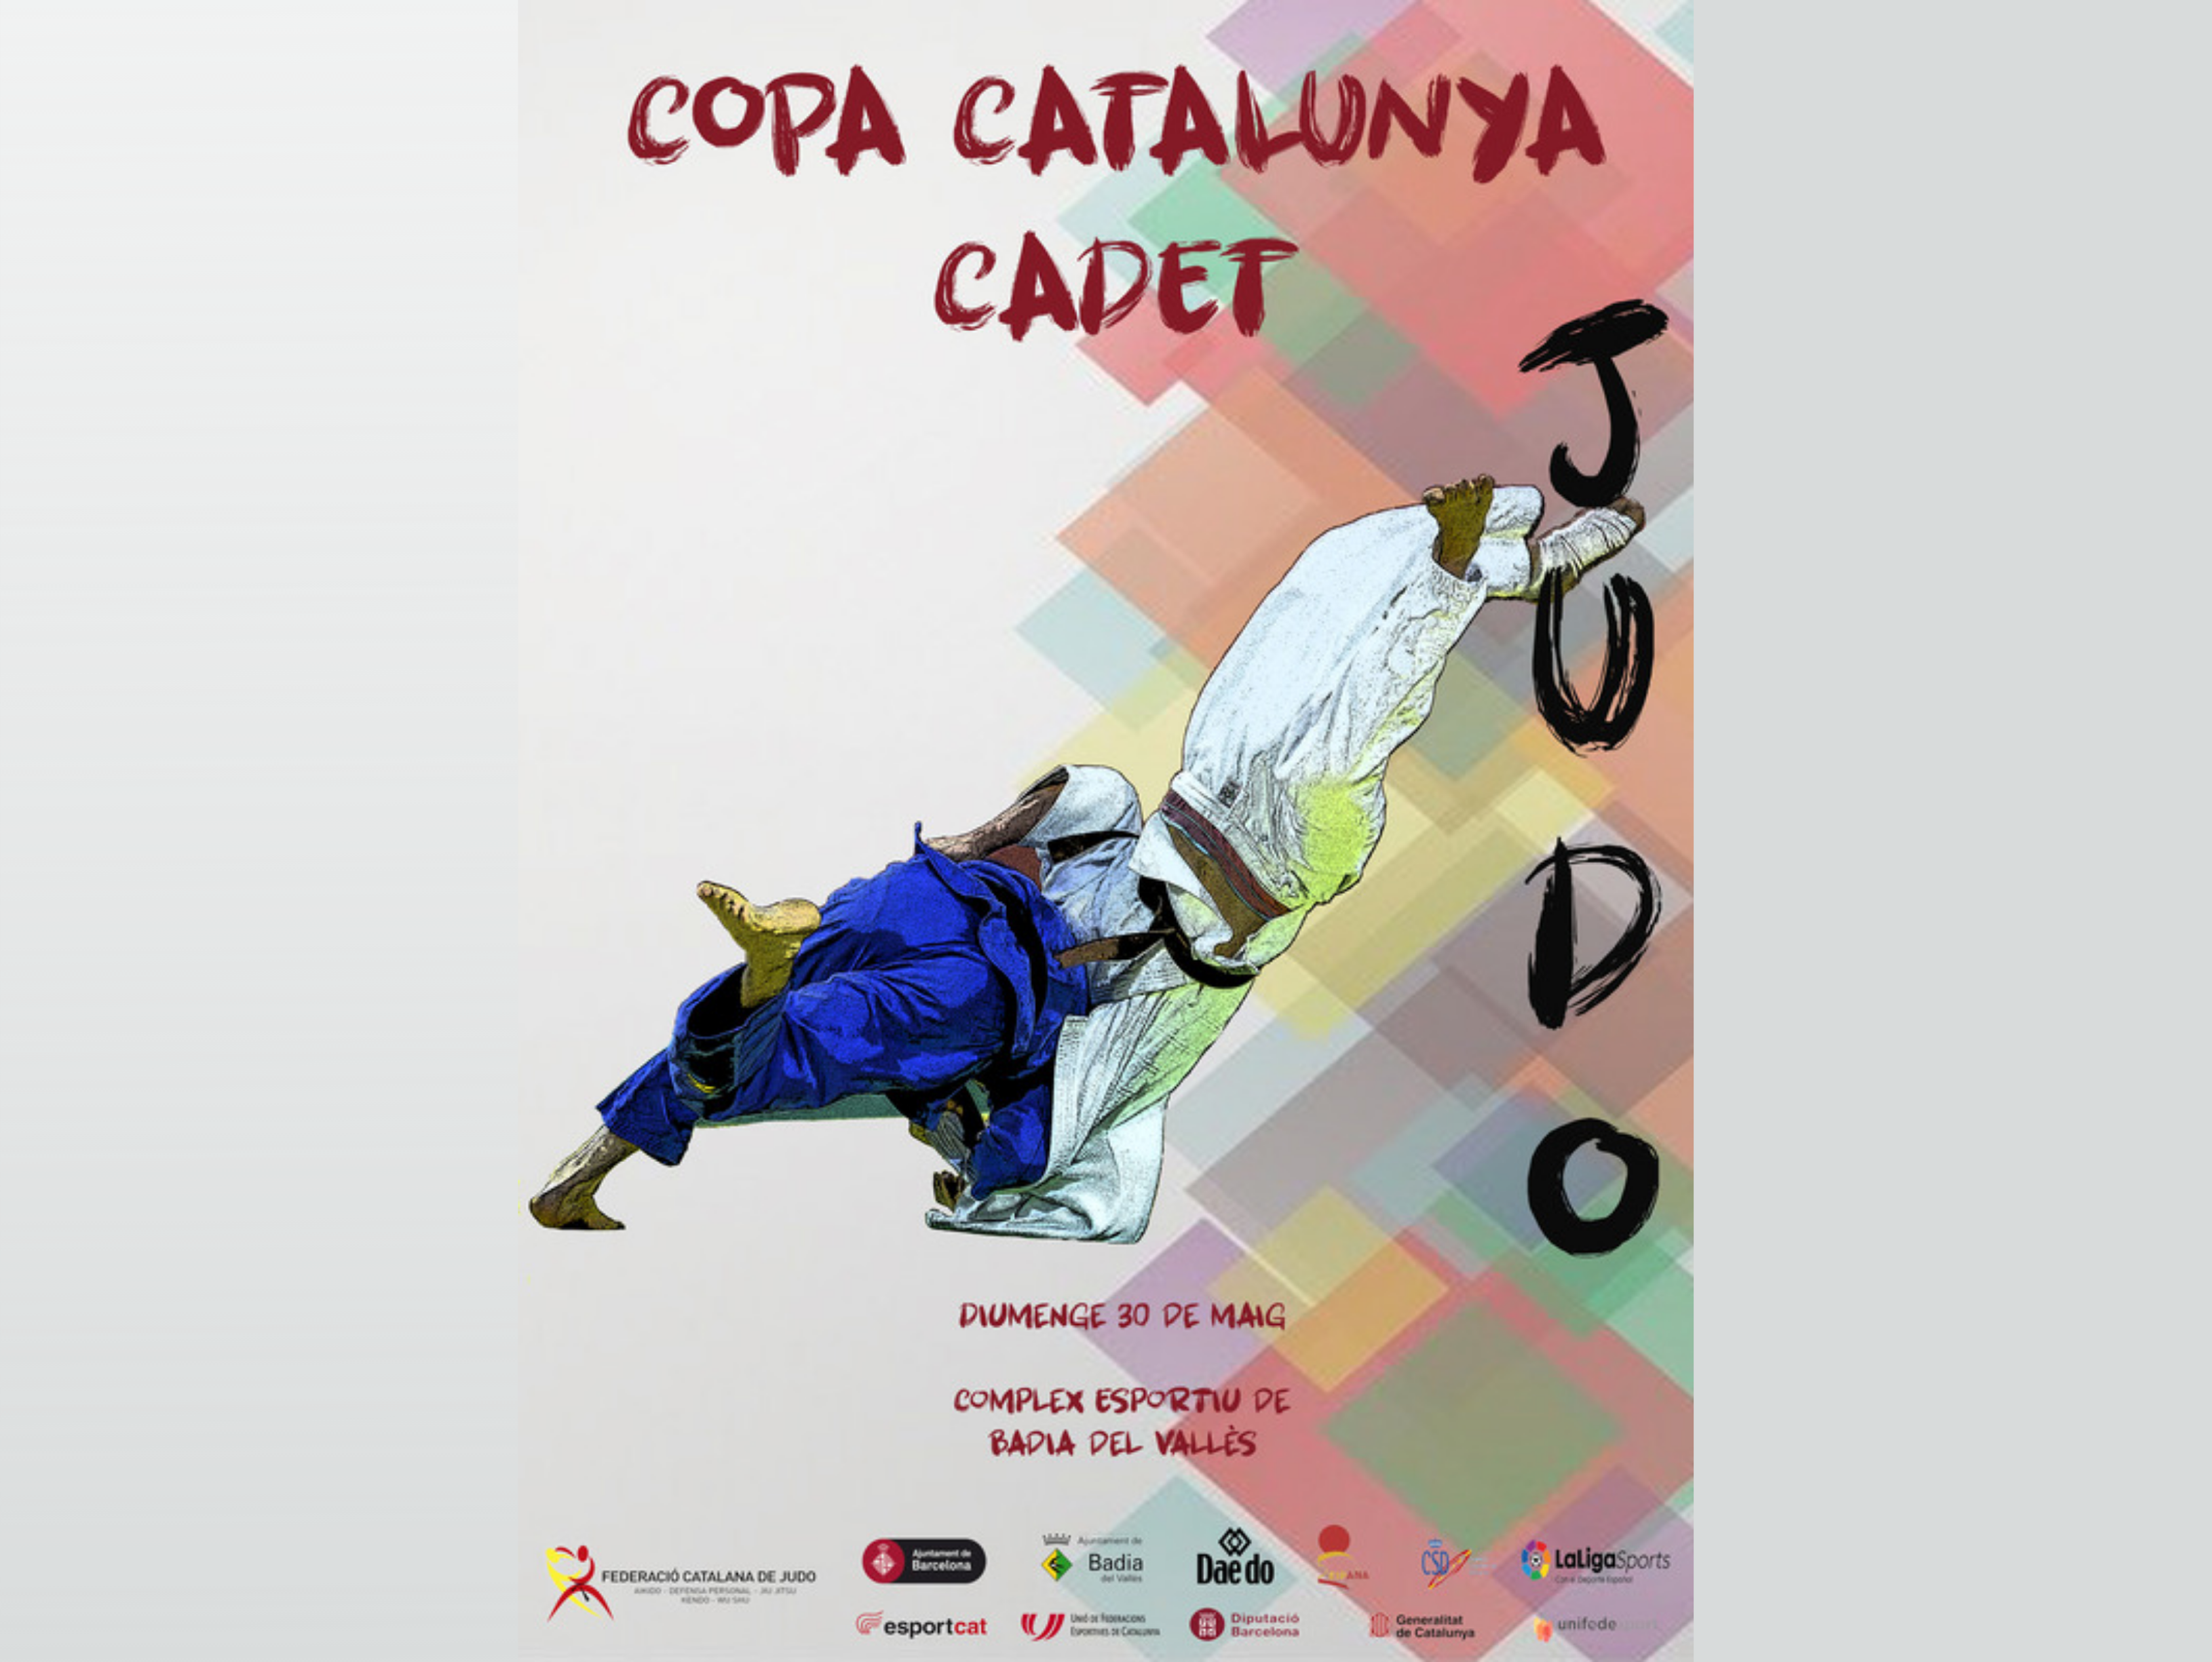 Copa Catalunya cadet